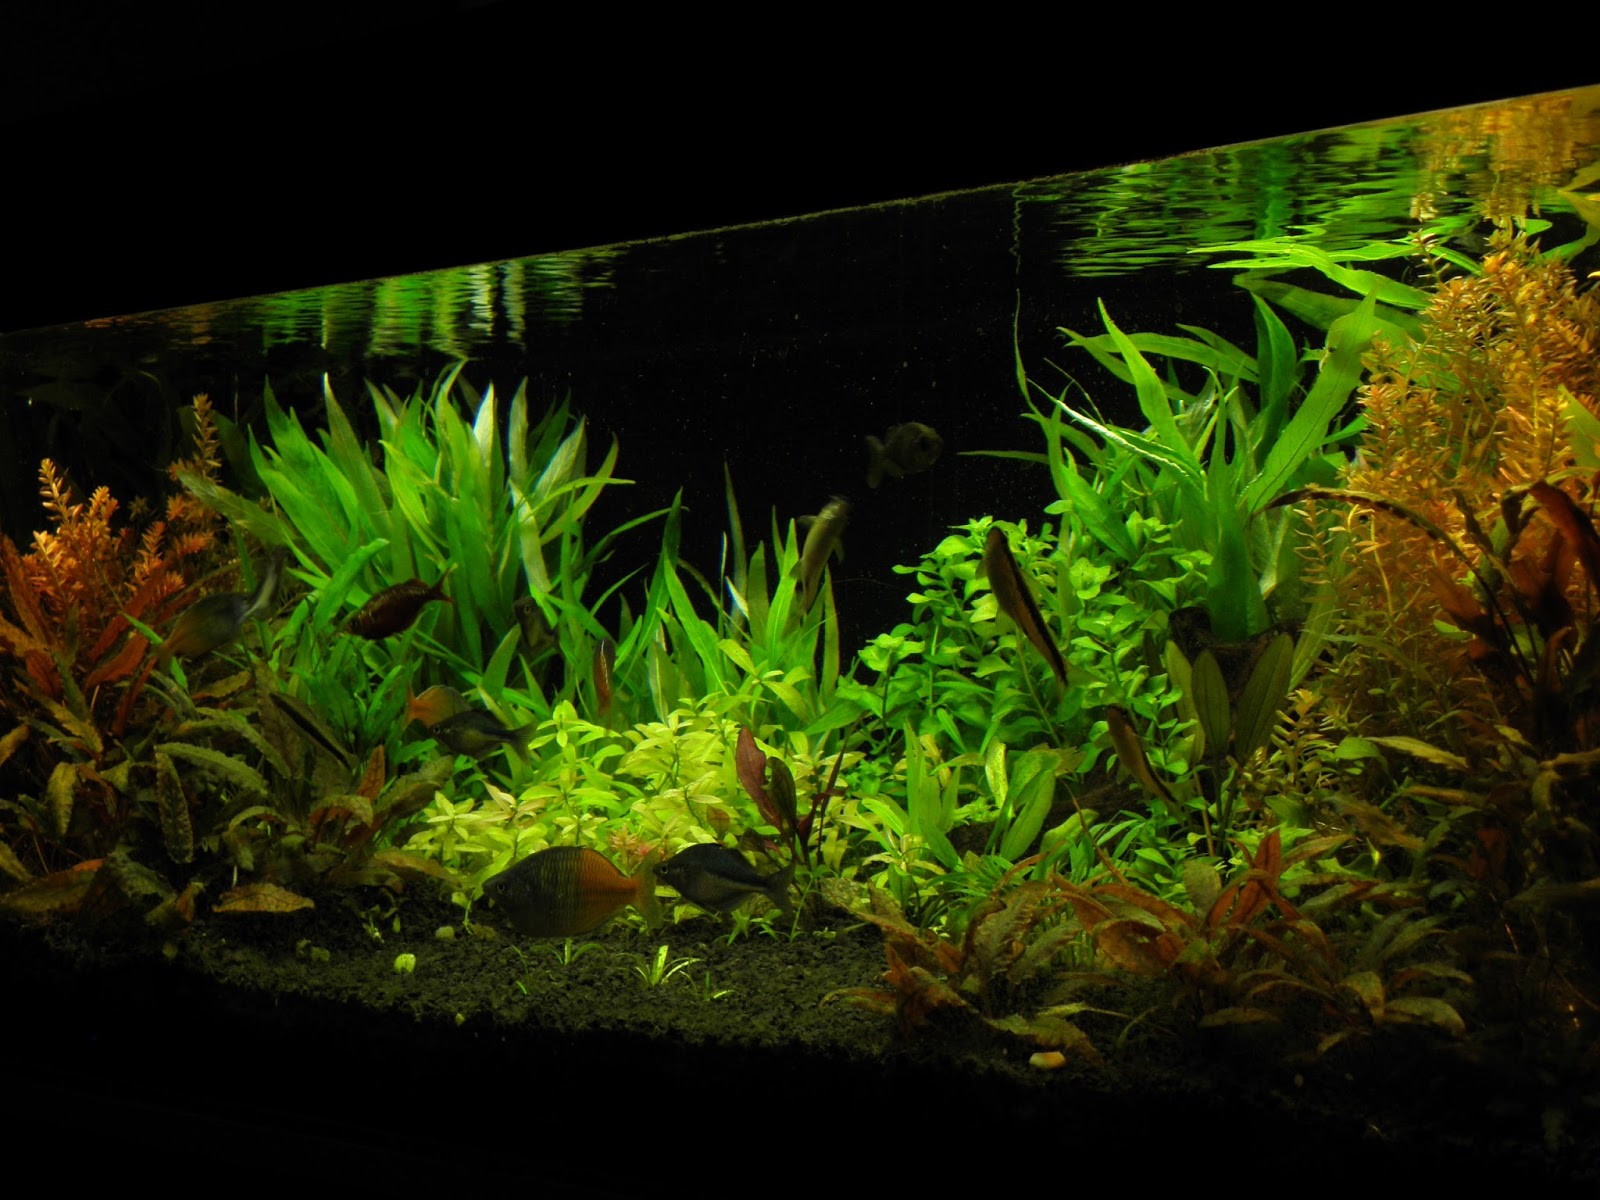 planted aquarium - 240l